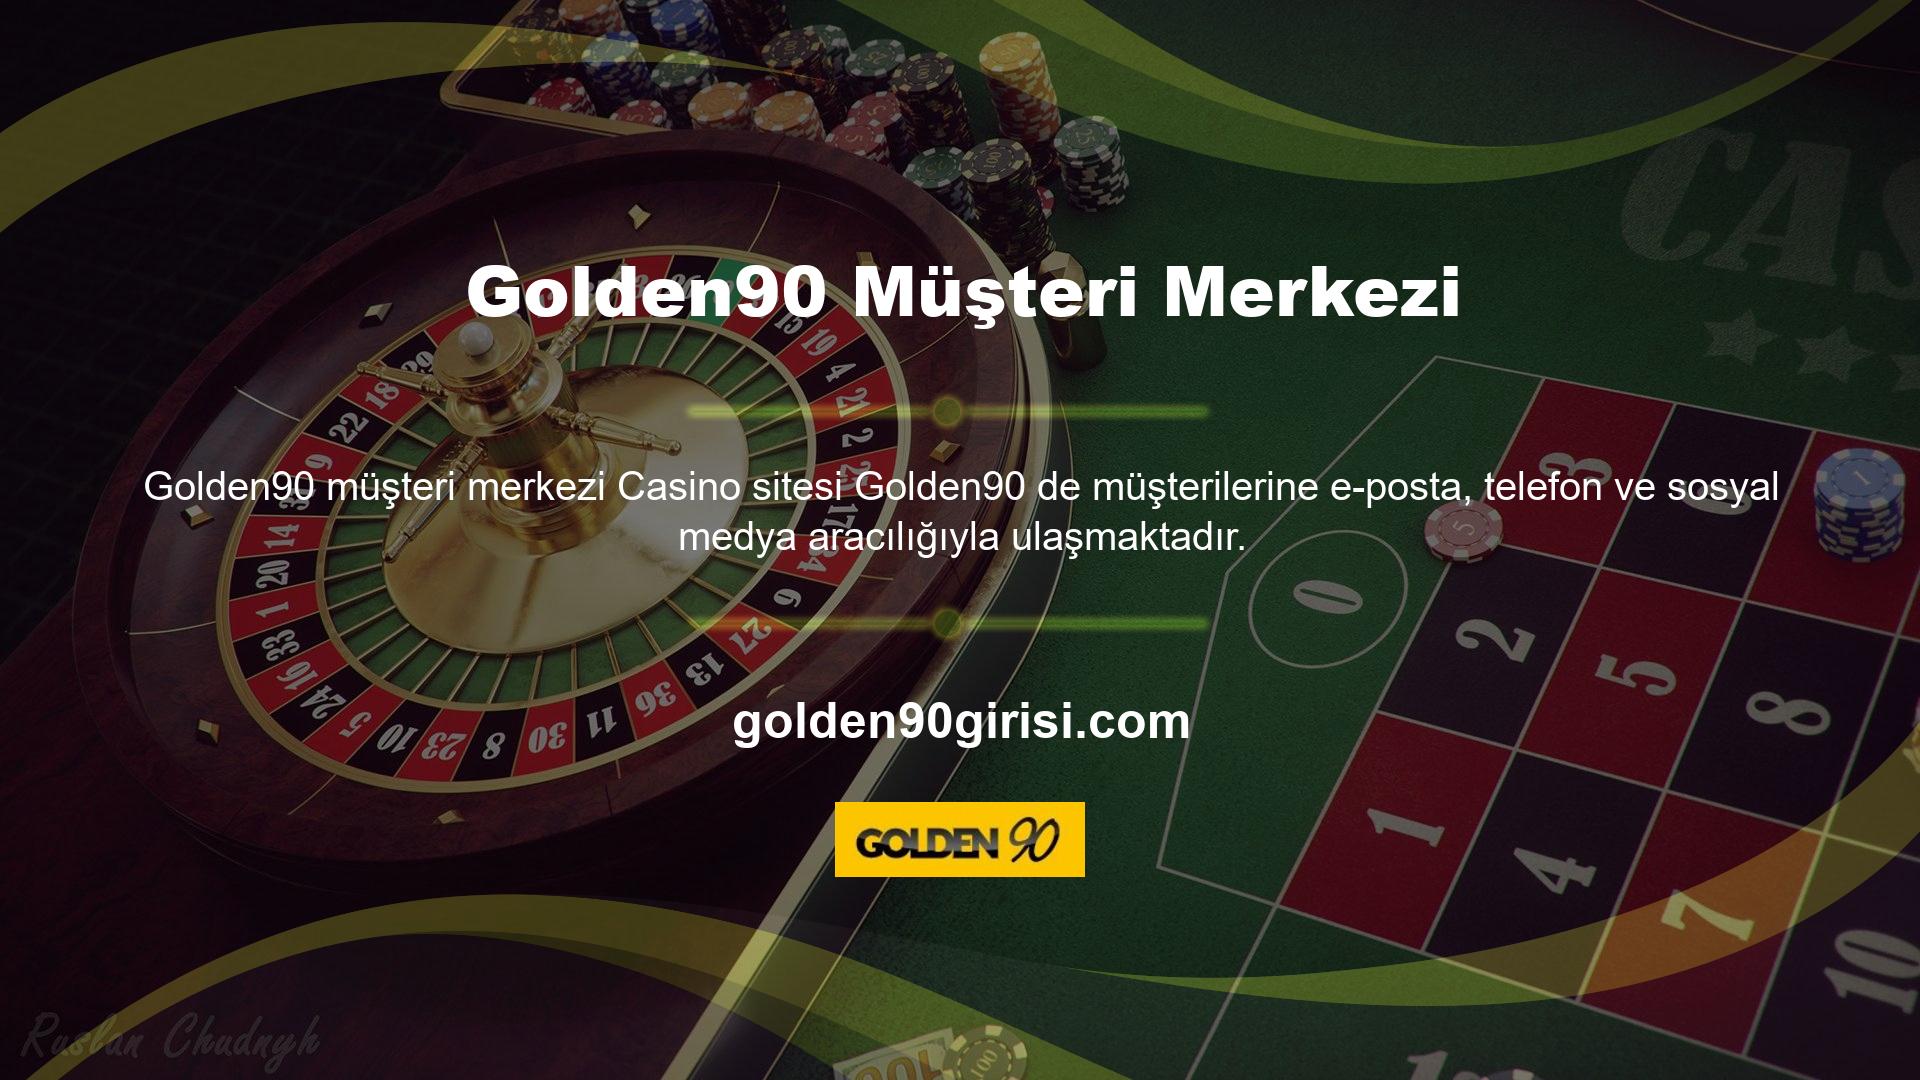 Golden90 ana teması, kullanıcının sorularına anında cevap verebilir